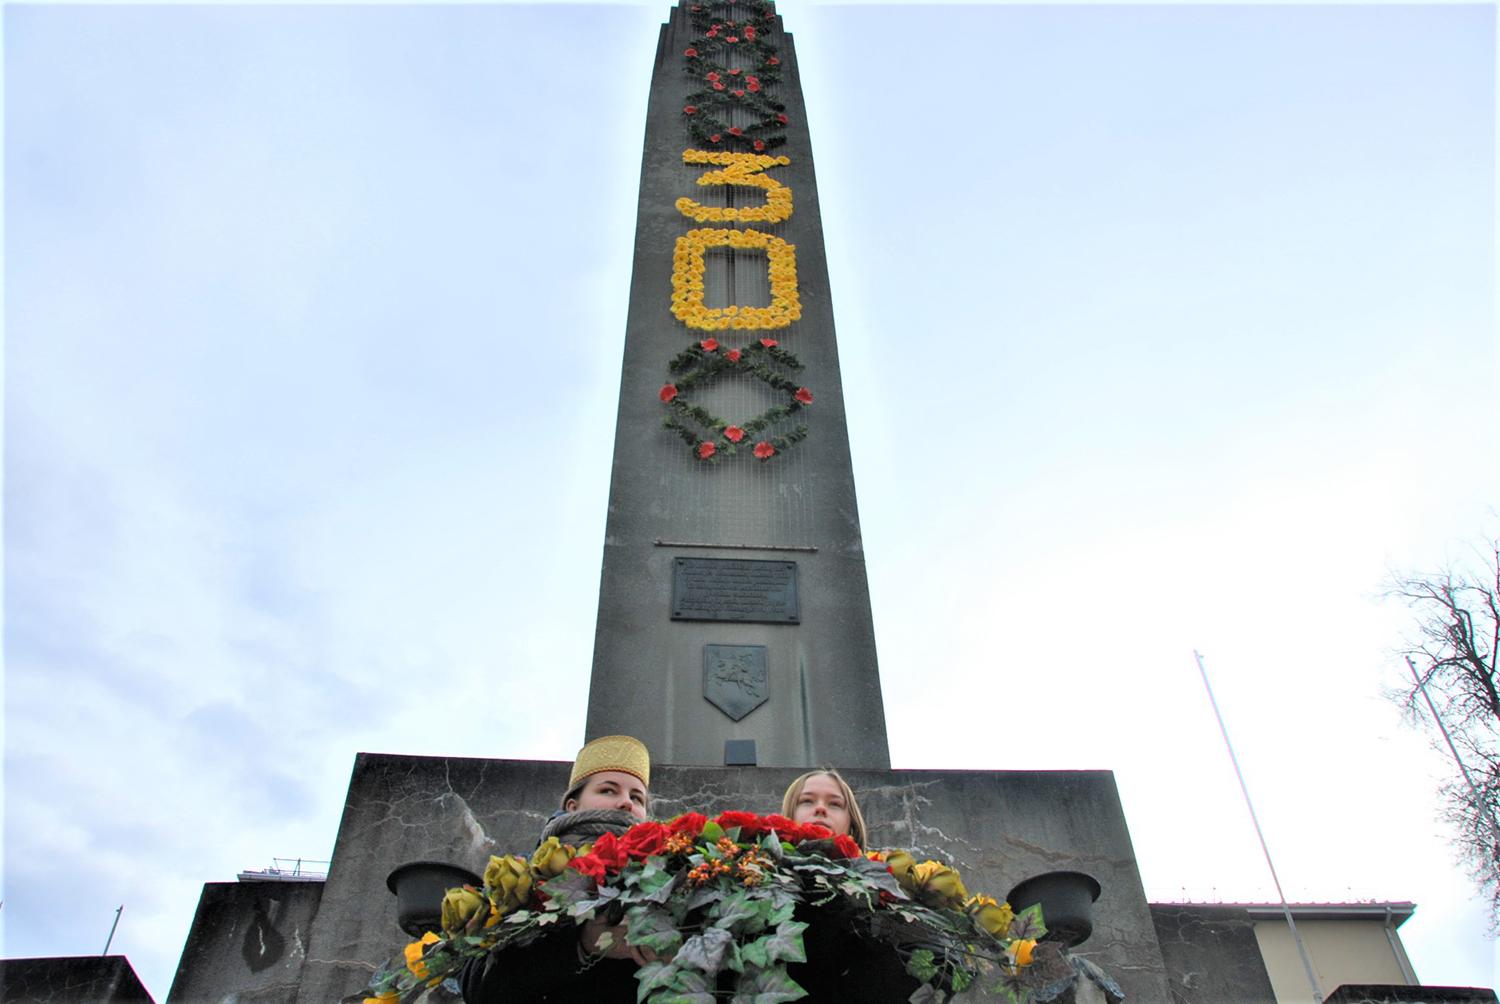 Vasario 16-ąją miesto laisvės simbolis minėjo jubiliejų / Gedimino Nemunaičio nuotr. Paminklas „Lituania Restituta“ buvo atstatytas prieš 30 metų.